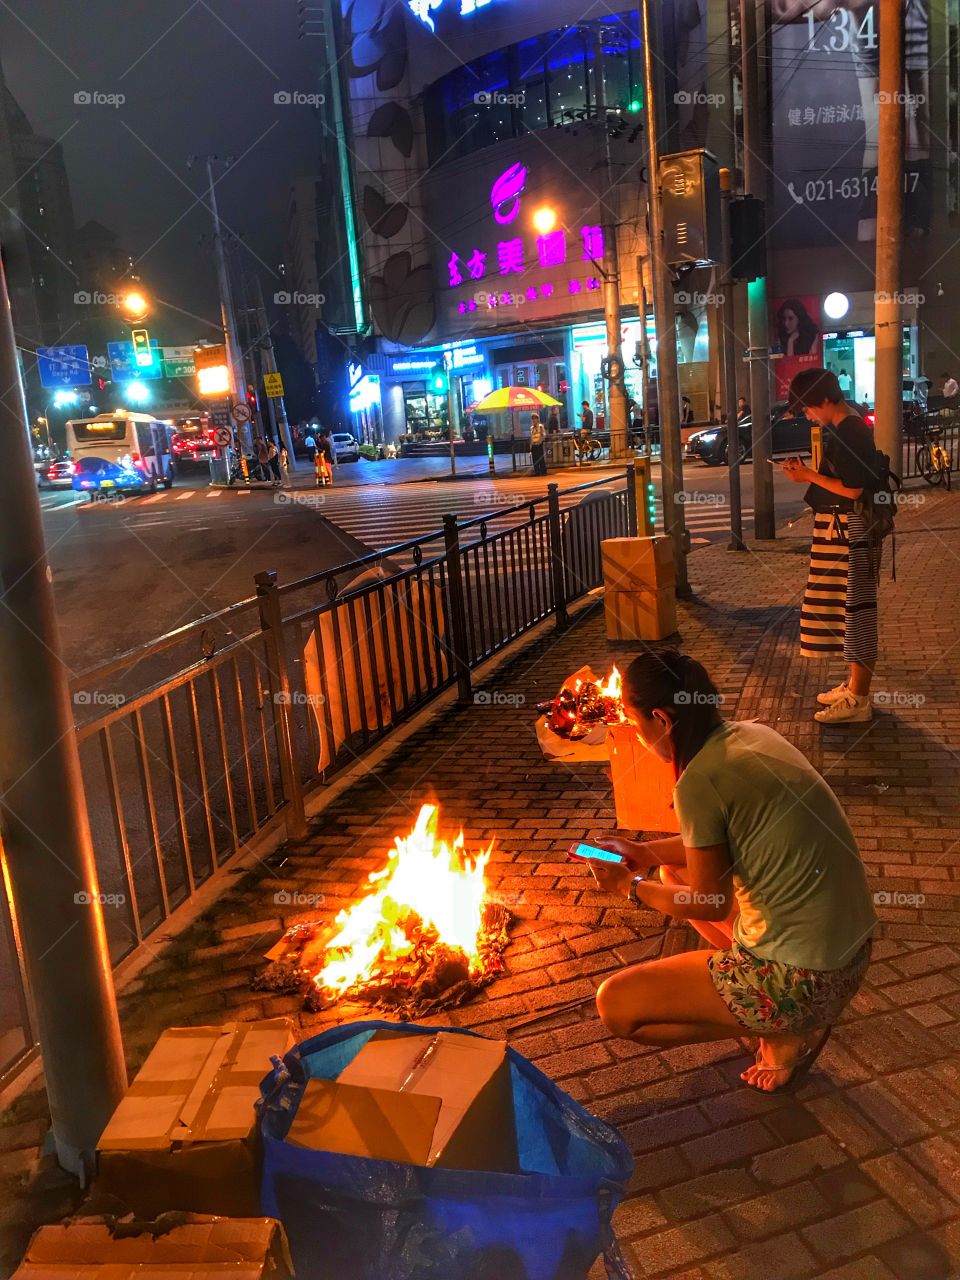 Burning fake money for luck in Puxi, Shanghai